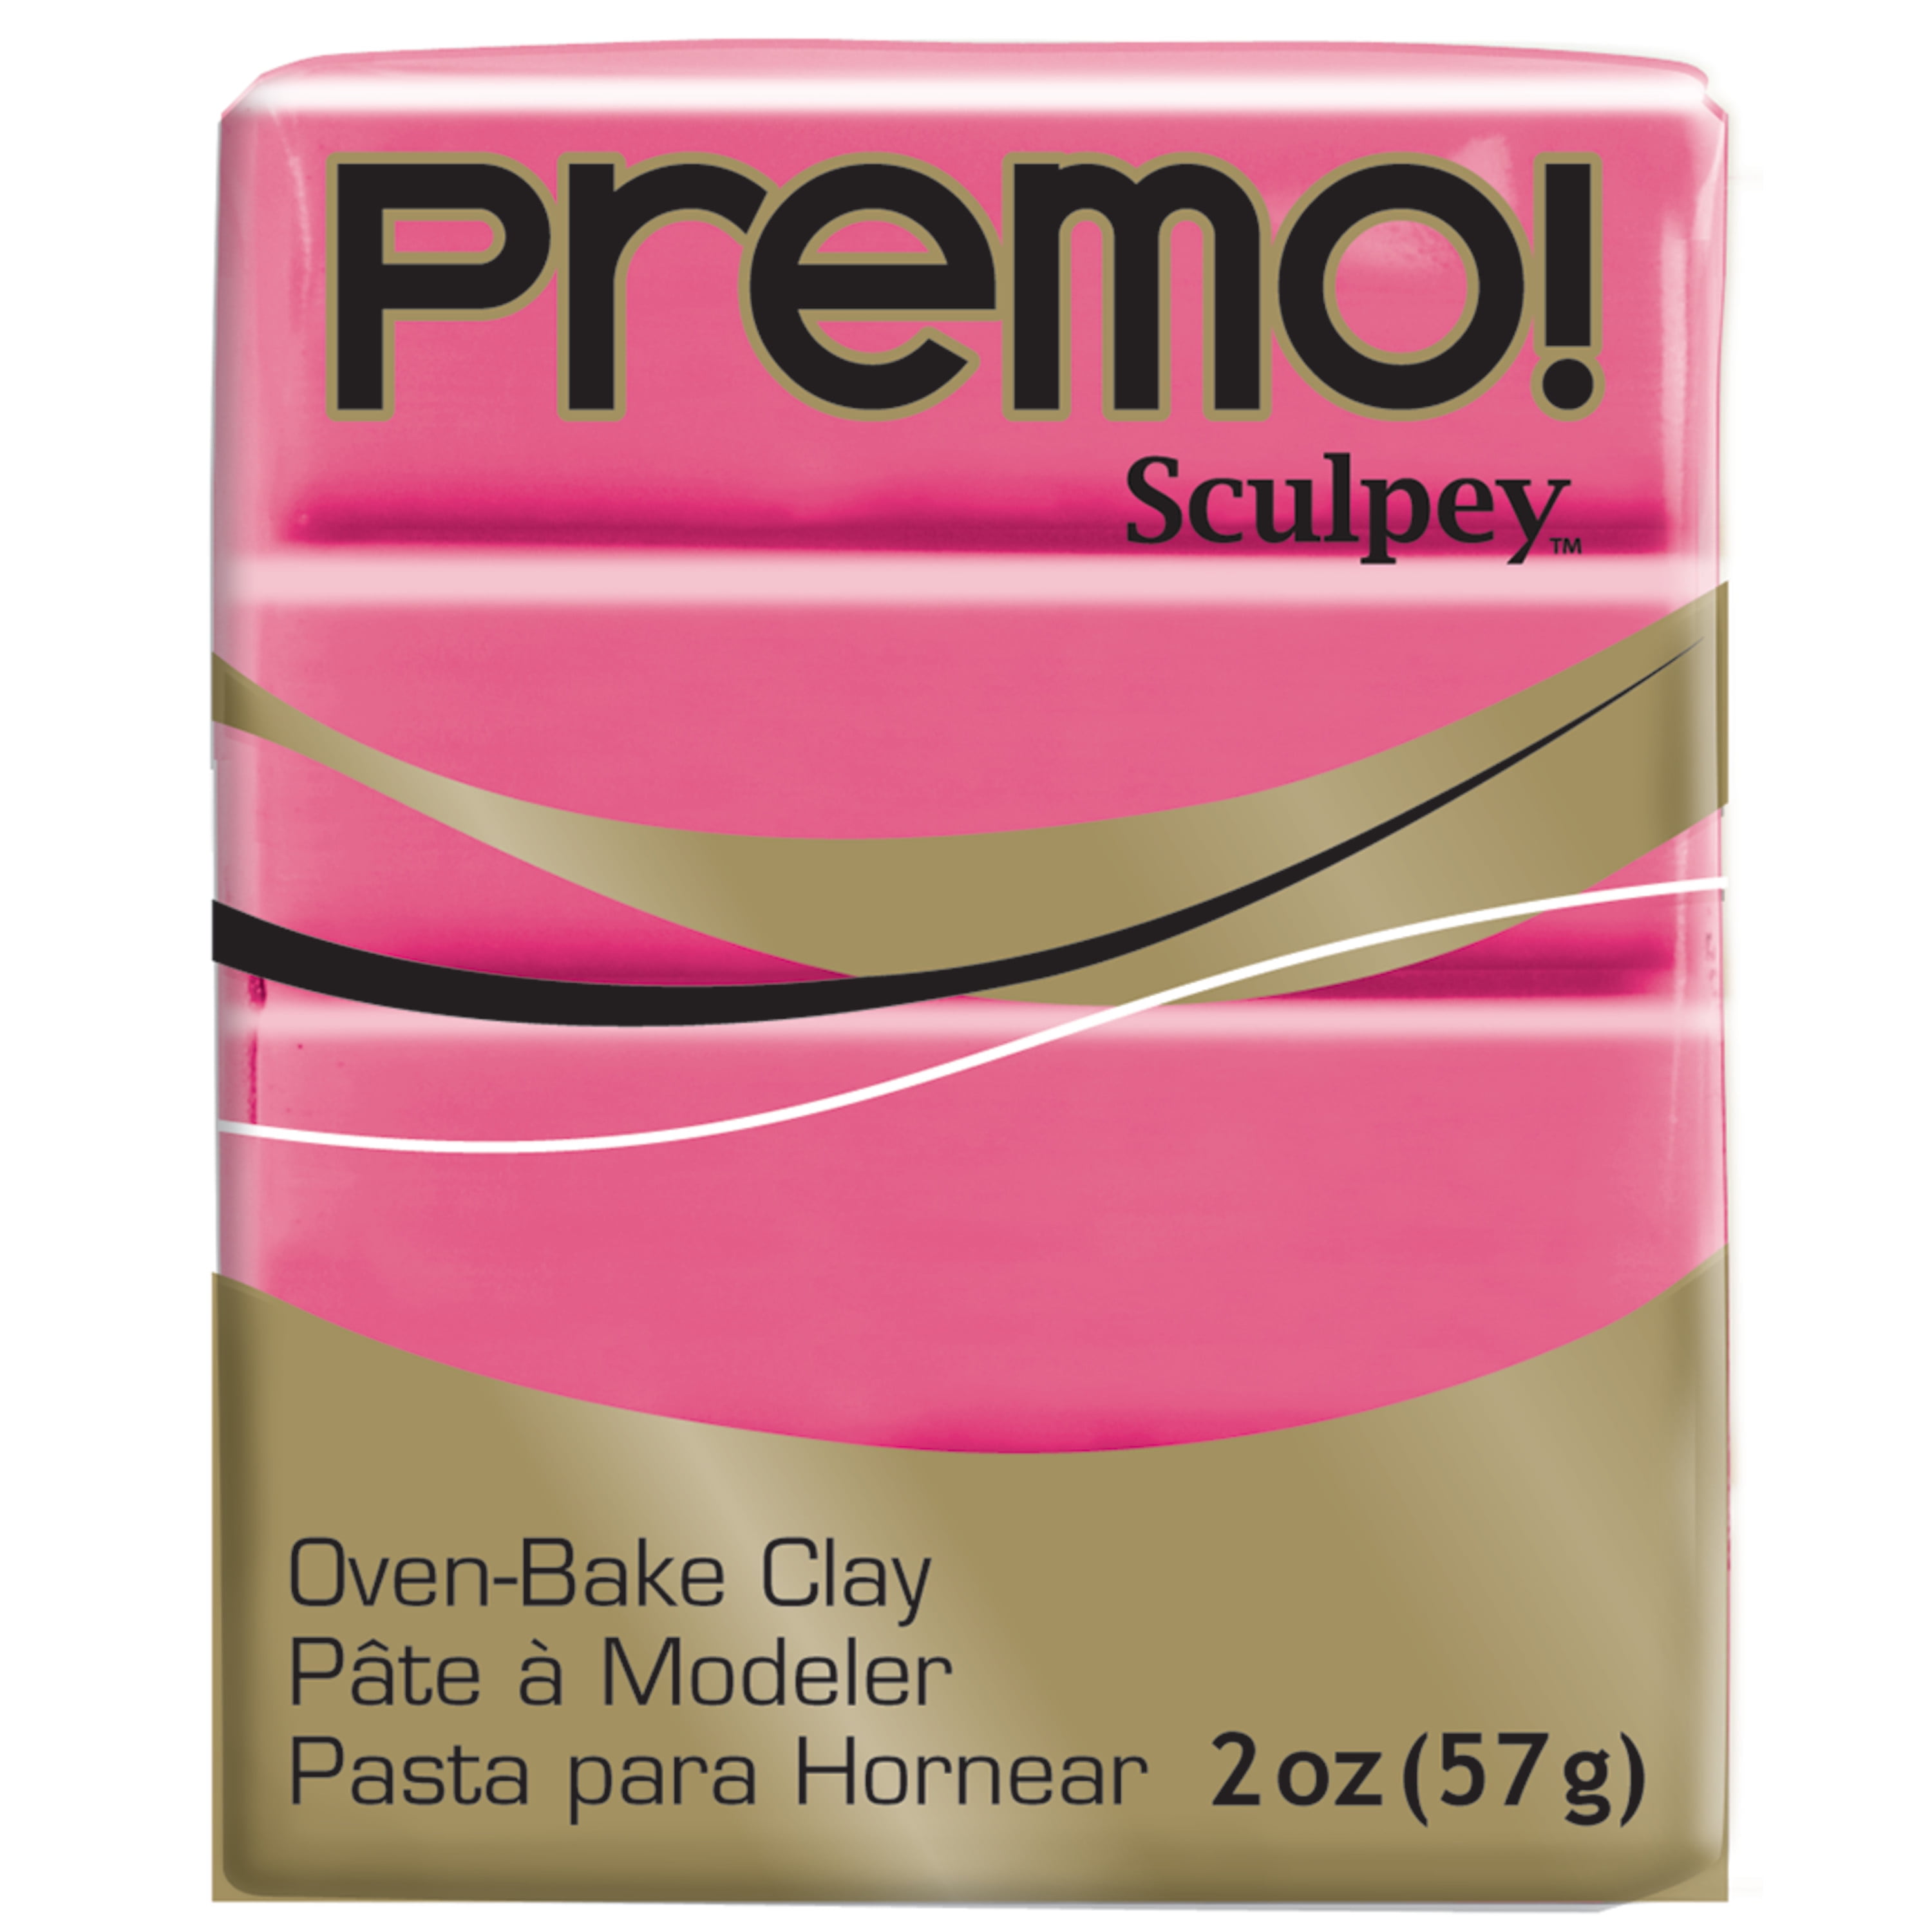 Sculpey Premo™ Mauve 2 oz